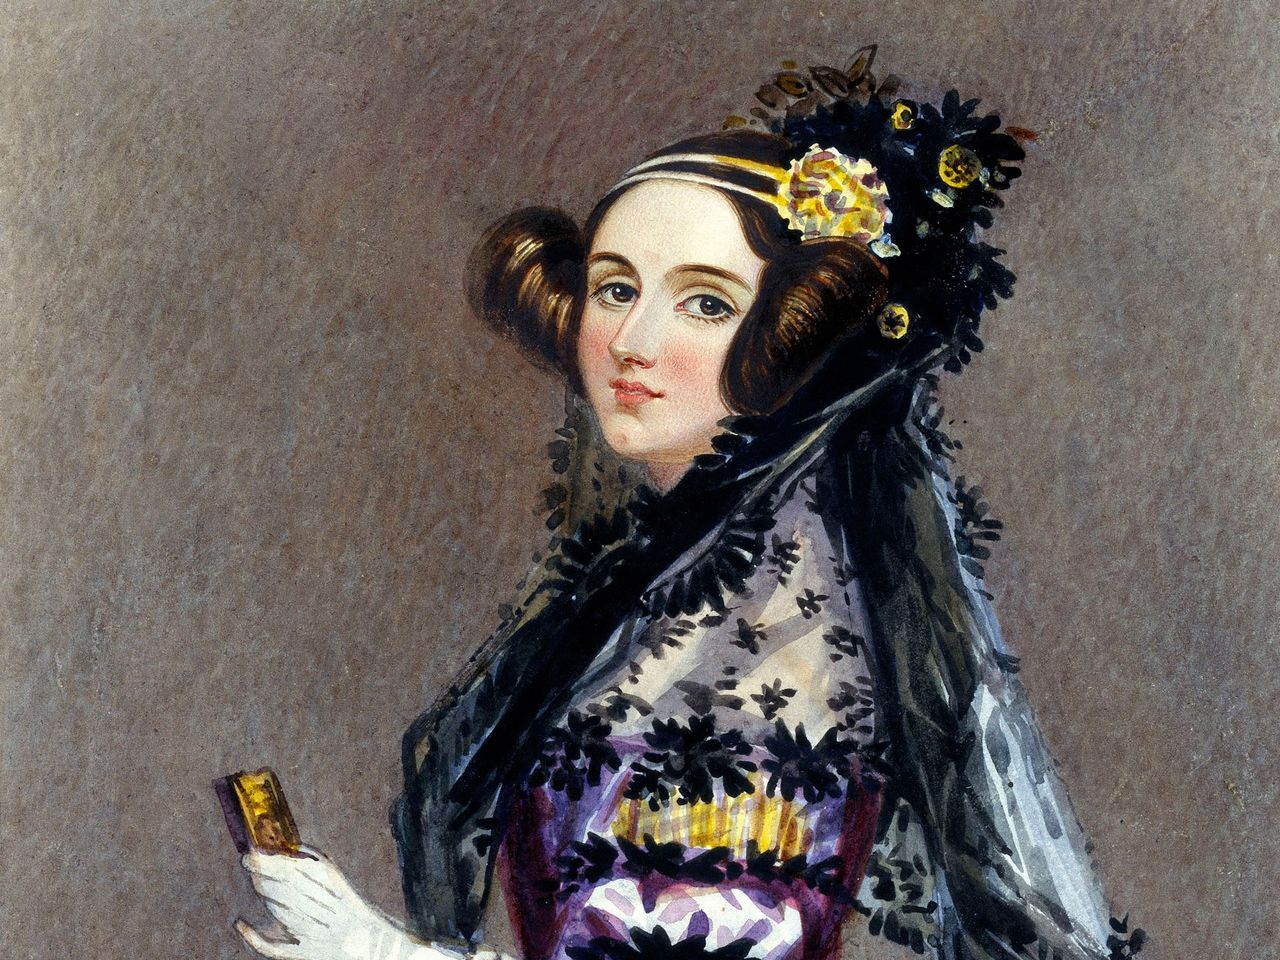 Portret Ady Lovelace z około 1840 roku (fot. Domena publiczna)